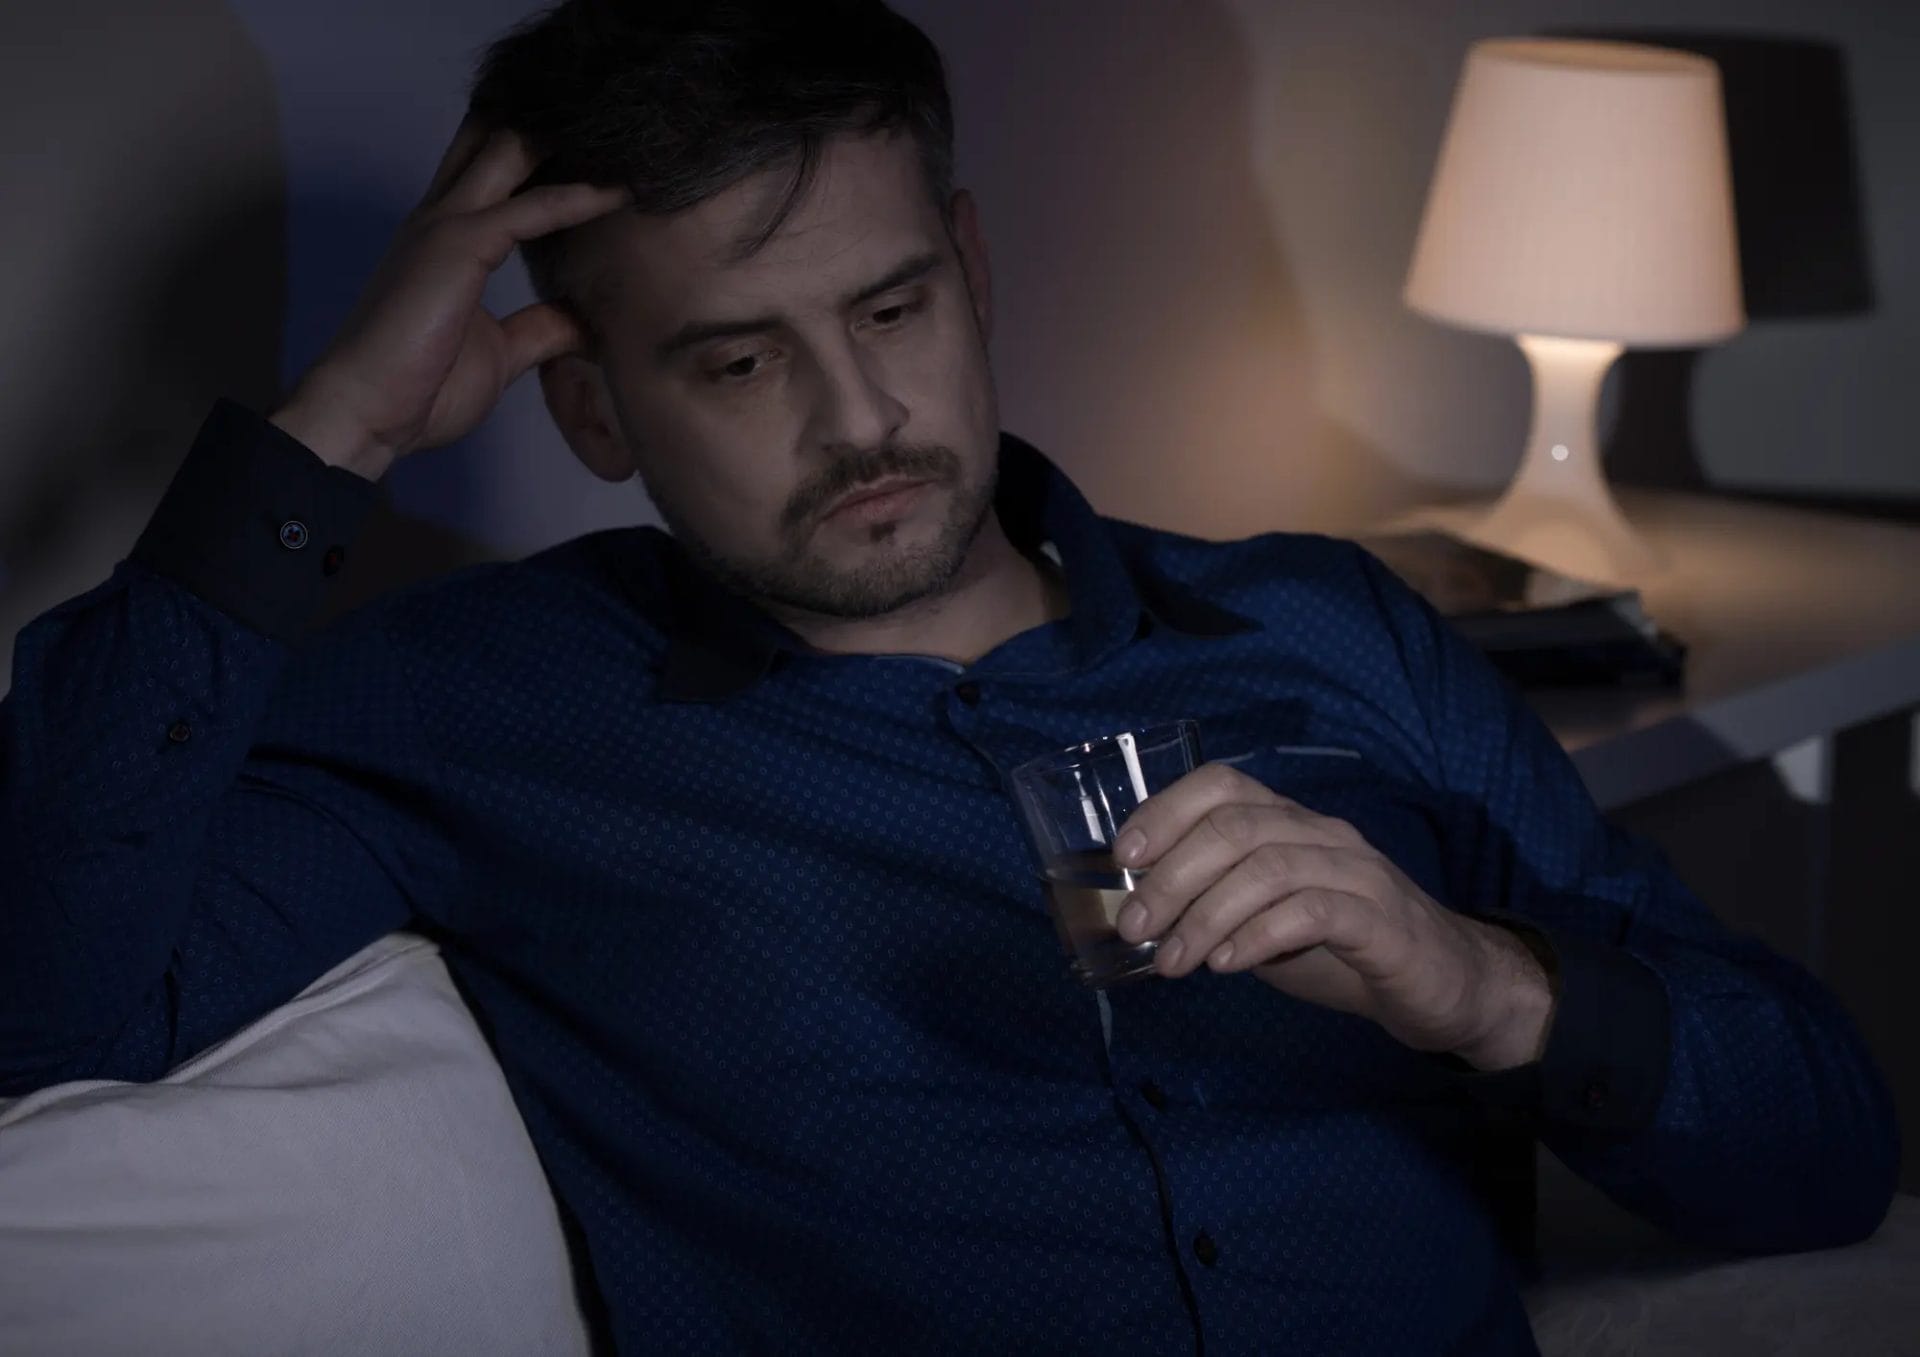 penyebab impotensi mengkonsumsi alkohol secara berlebihan dapat merusak pembuluh darah dan merusak sistem saraf